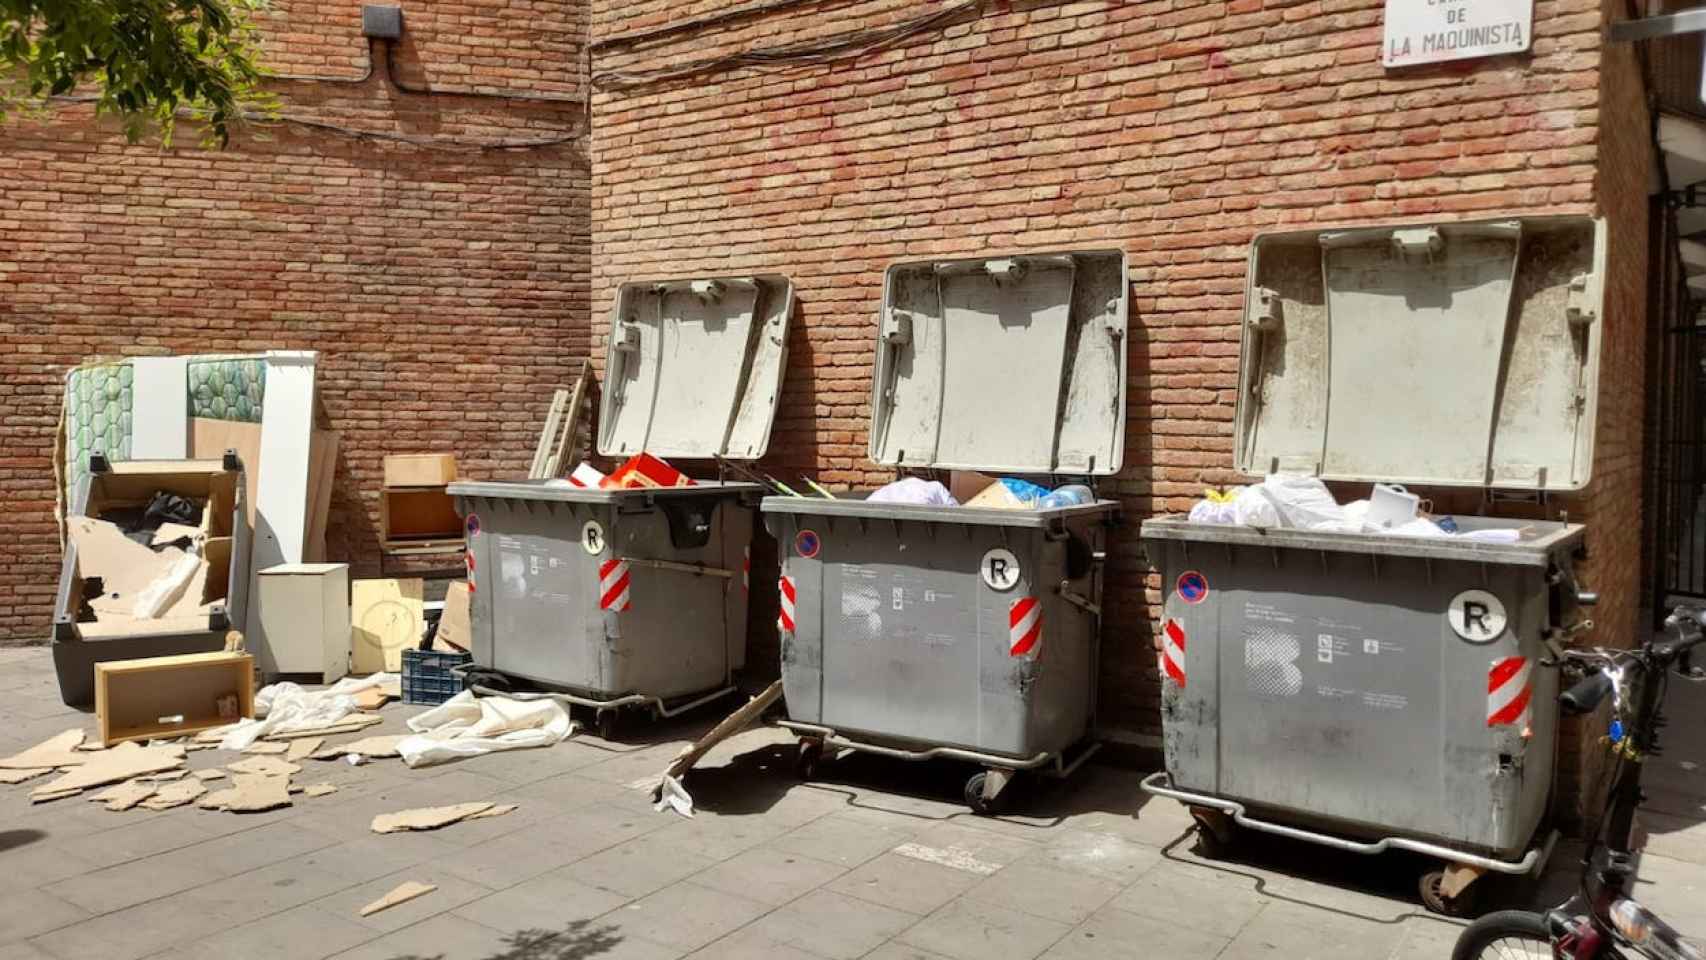 Contenedores llenos de suciedad y objetos en la calle de la Maquinista de la Barceloneta / METRÓPOLI